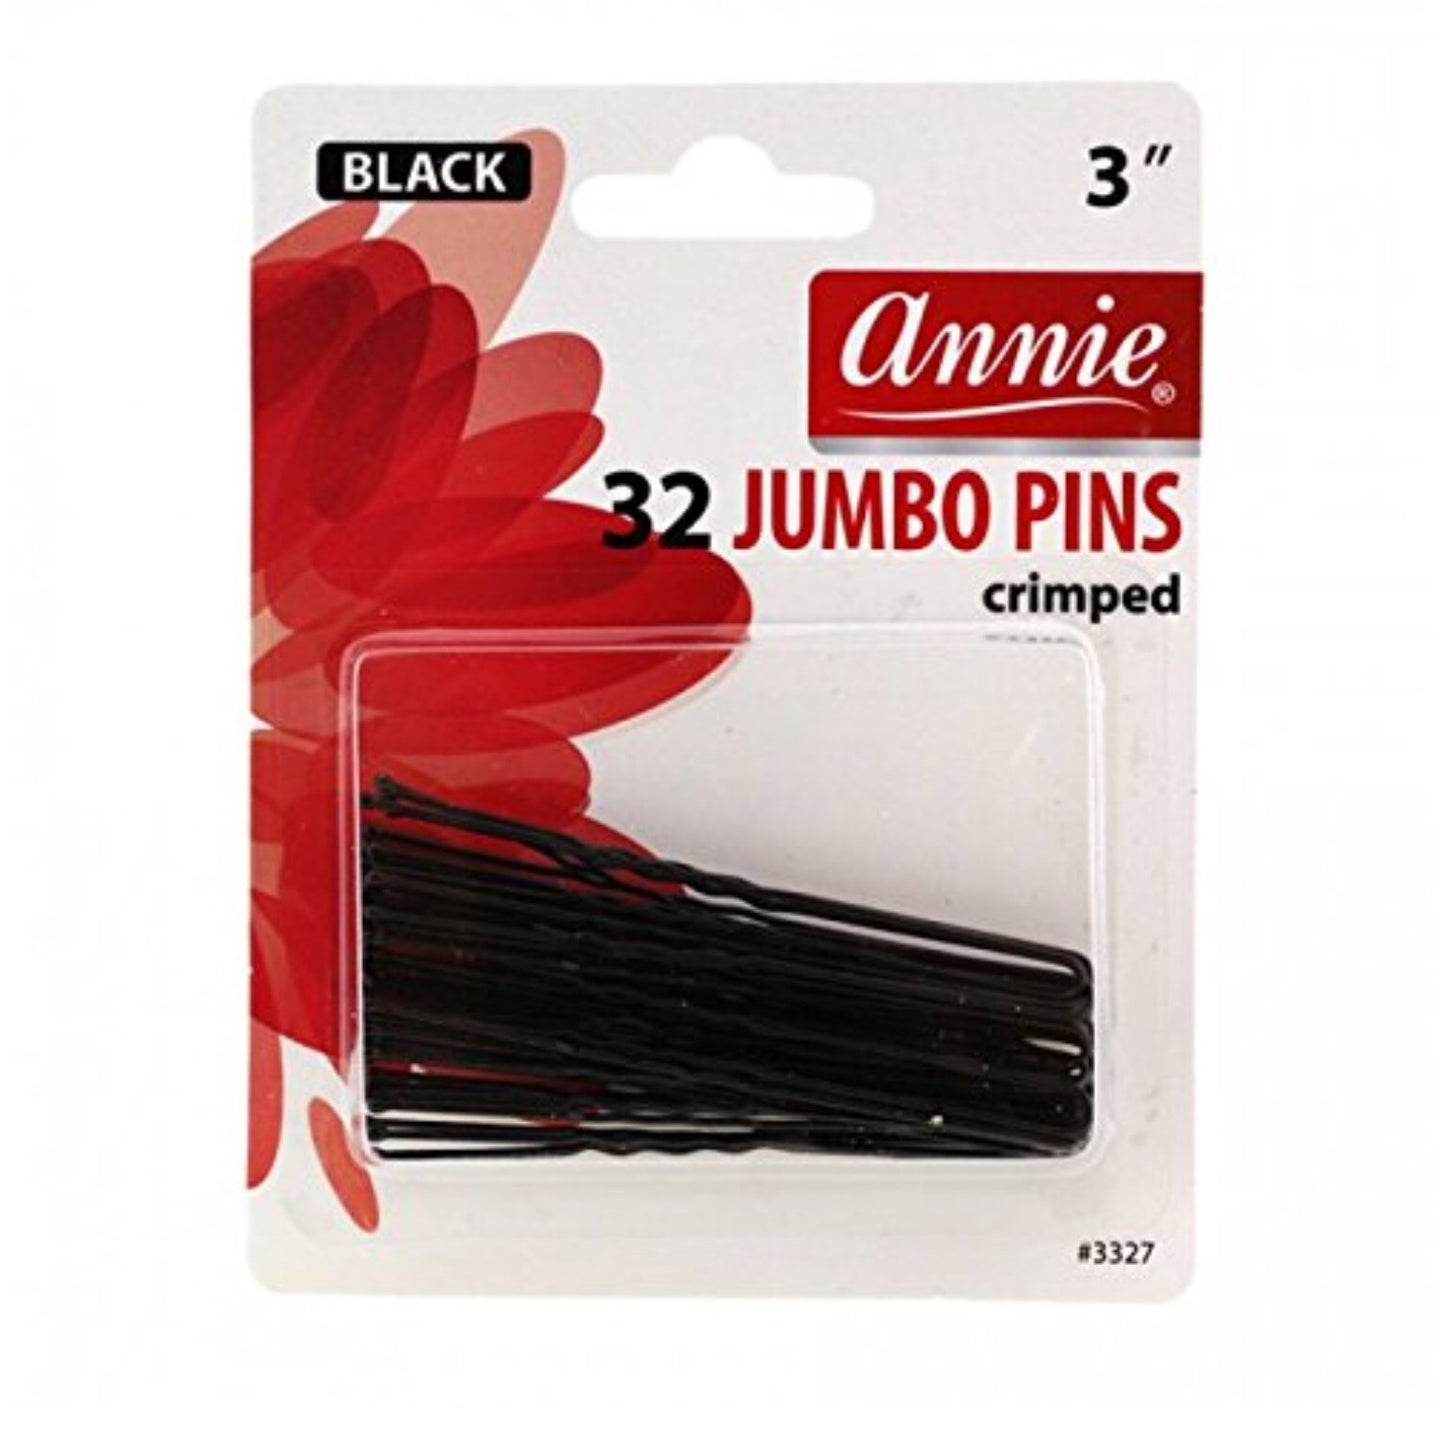 ANNIE Hair Pins Crimped